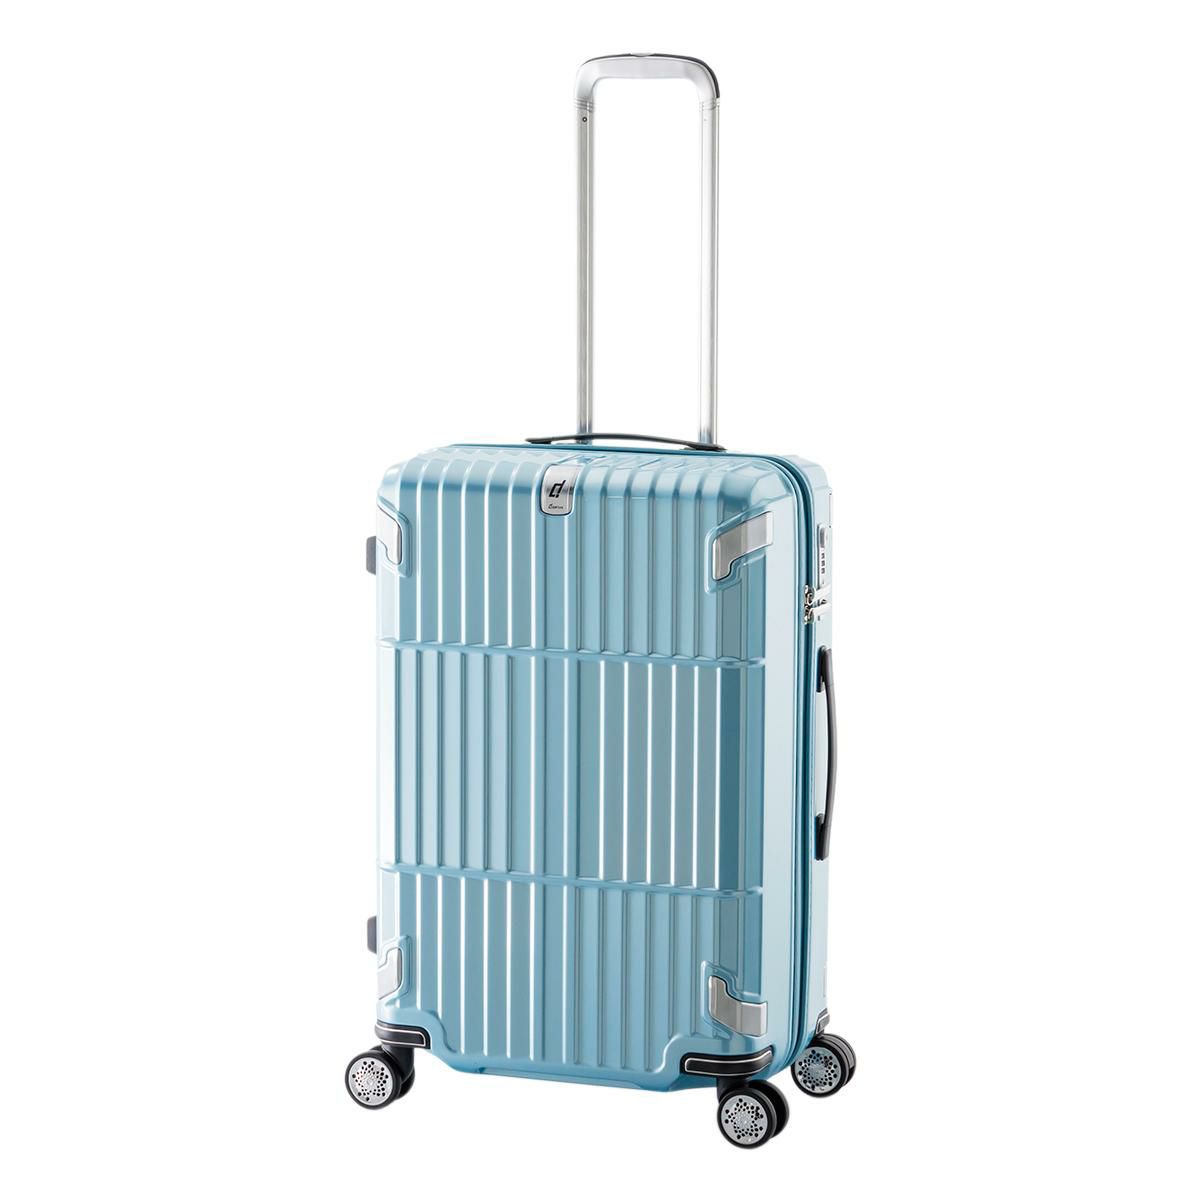 ランバンオンブルー スーツケース 機内持ち込み 32L 49cm 3.4kg 